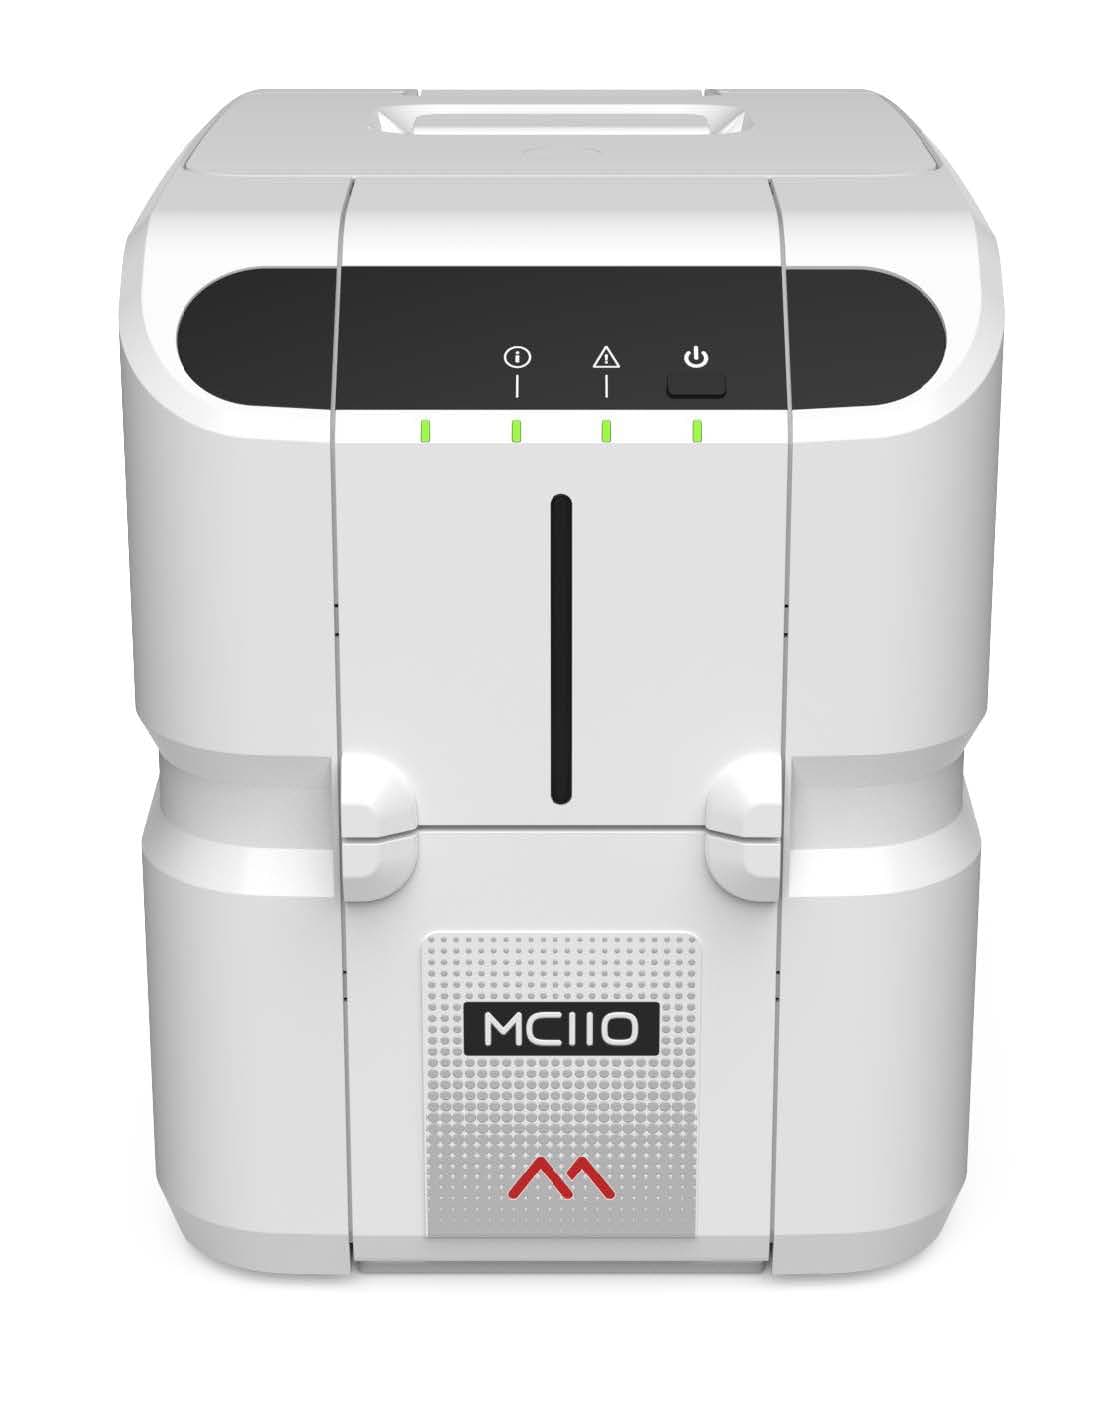 MC110